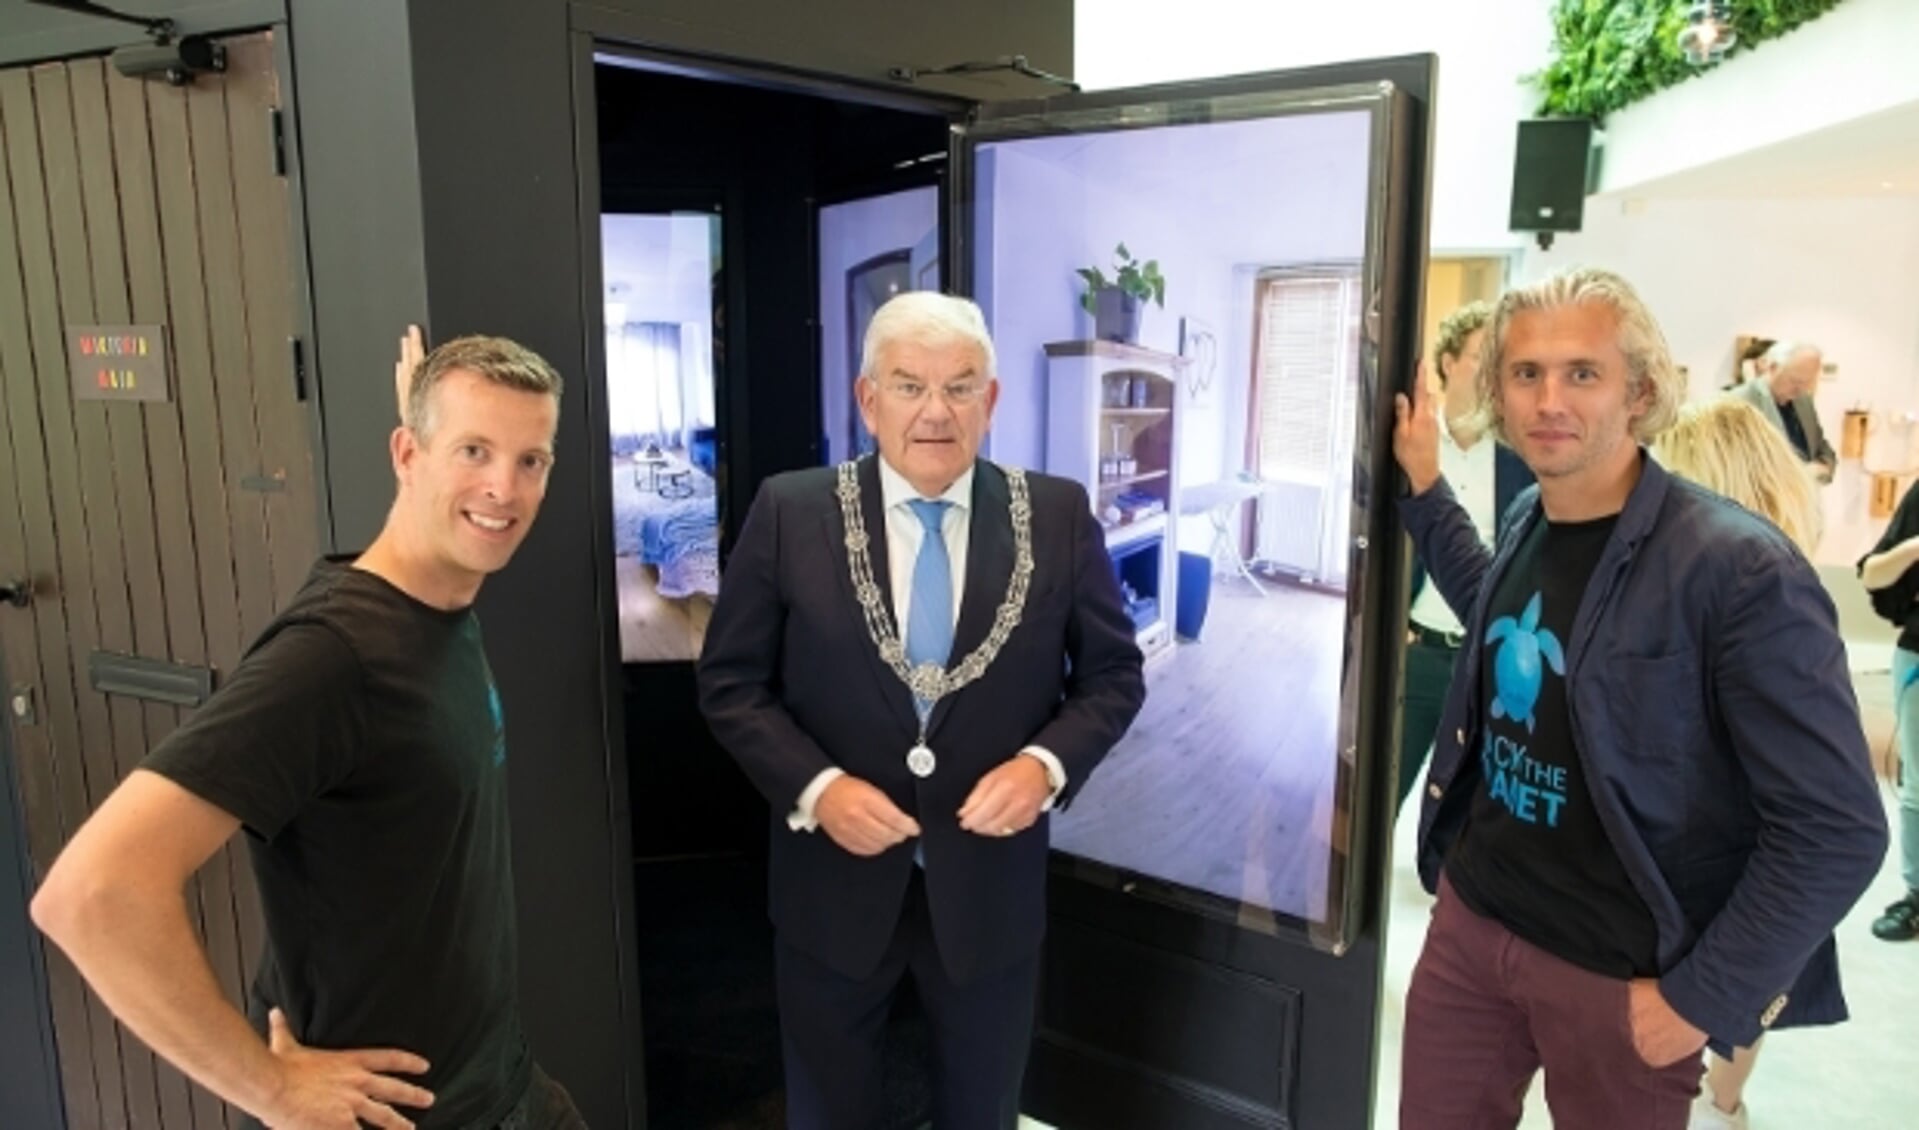 Burgemeester Jan van Zanen van Den Haag verrichtte de opening van de nieuwe installatie van Hack The Planet die erop is gericht om de samenhang in de wijk te verbeteren. 